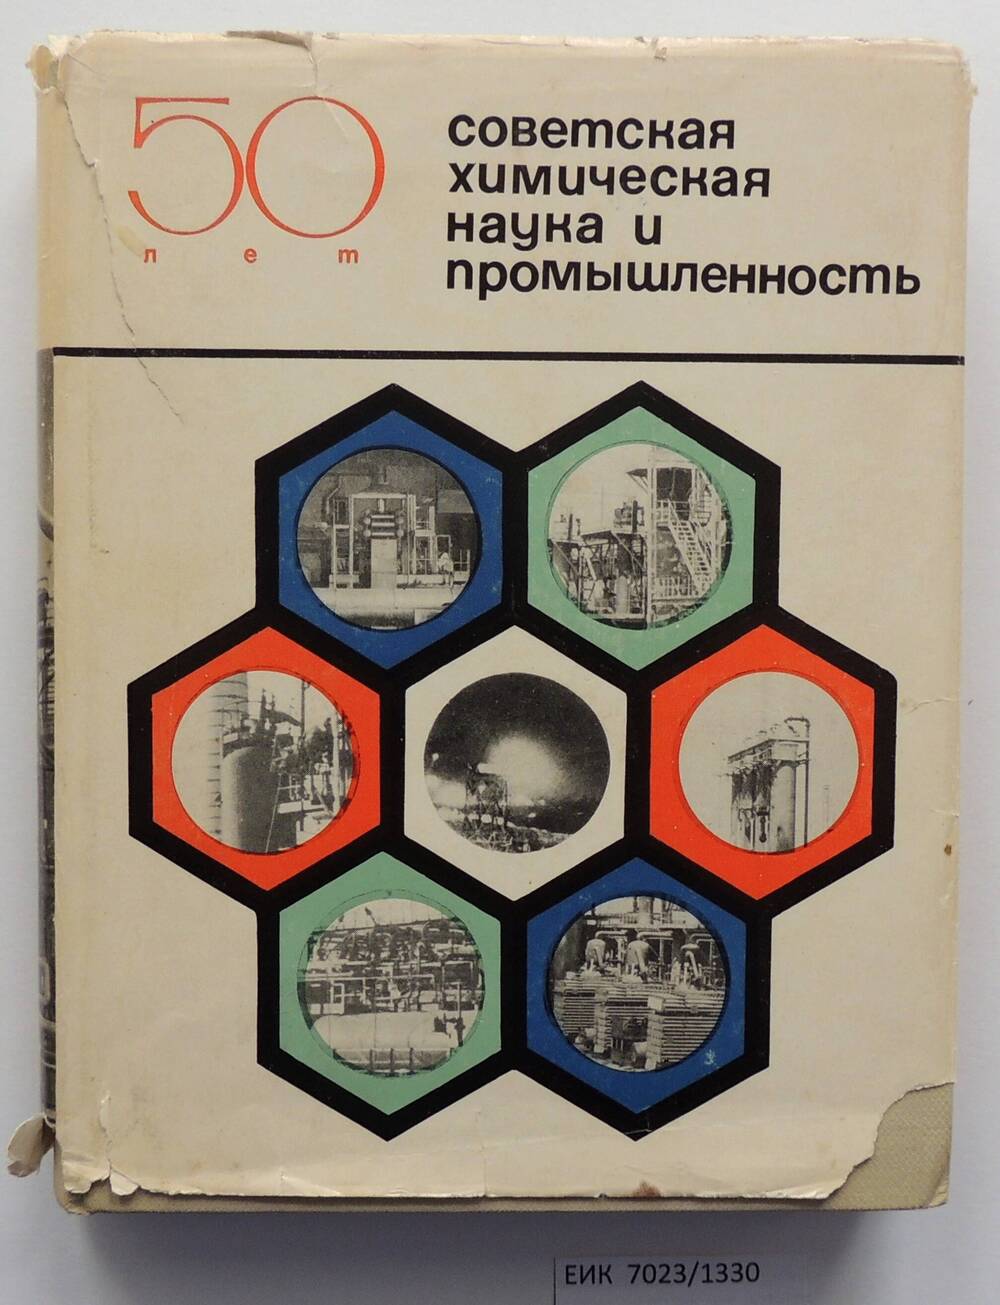 Книга «50 лет Советская химическая наука и промышленность» Ефремовского завода СК